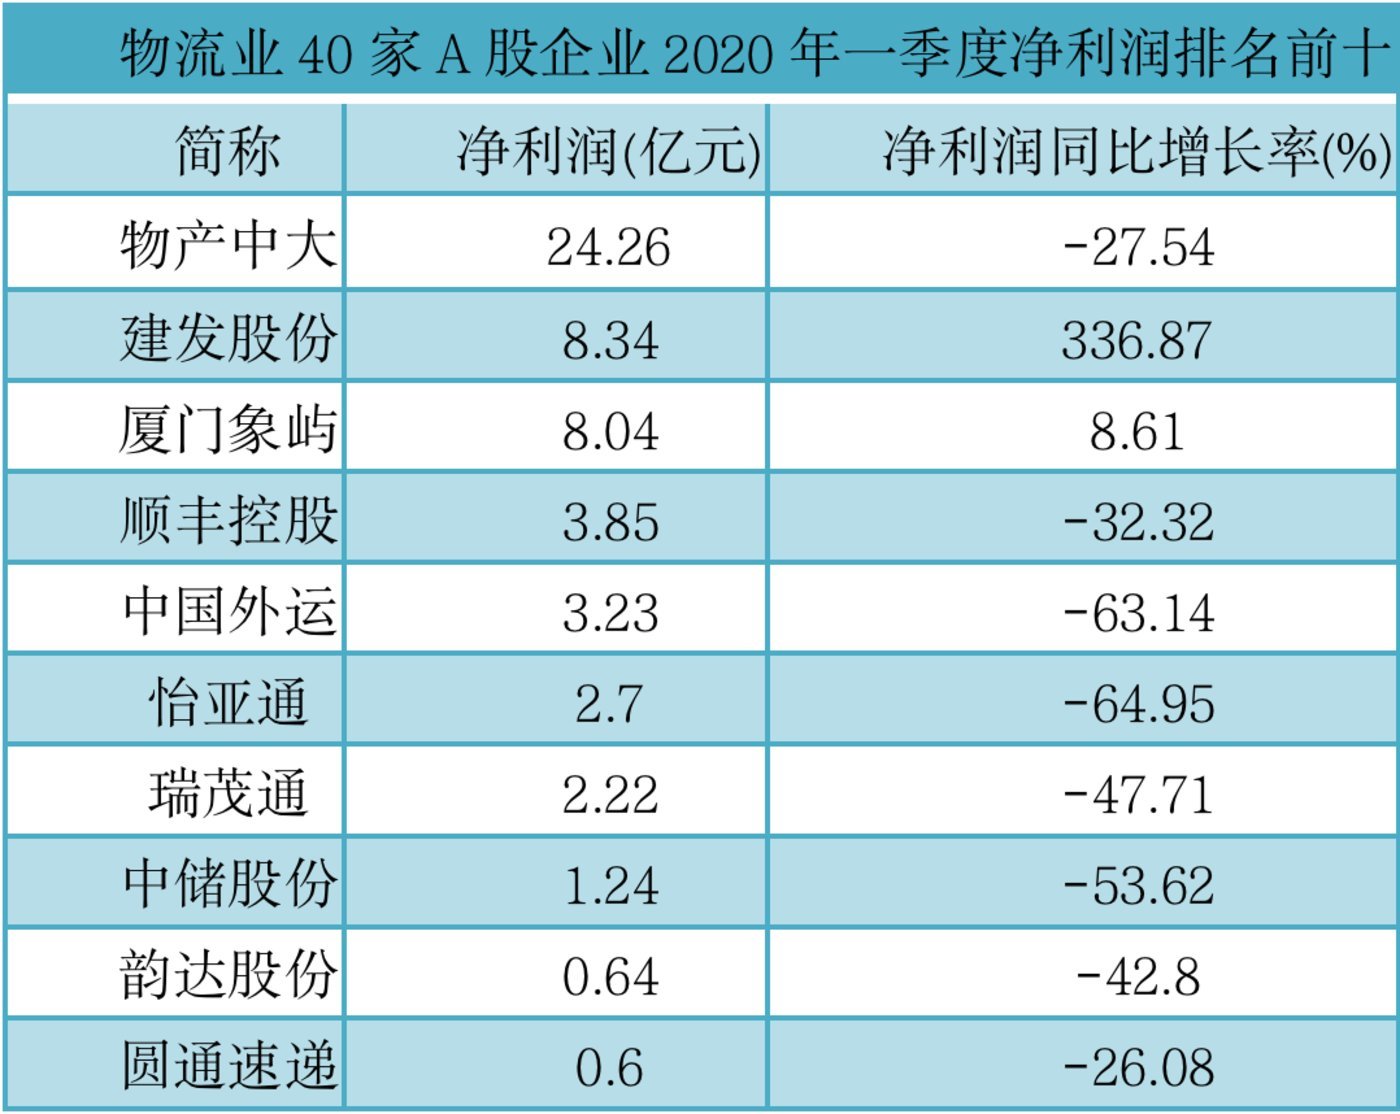 2019年Q1-2020年Q4可口可乐营收规模及增长率（附原数据表） | 互联网数据资讯网-199IT | 中文互联网数据研究资讯中心-199IT